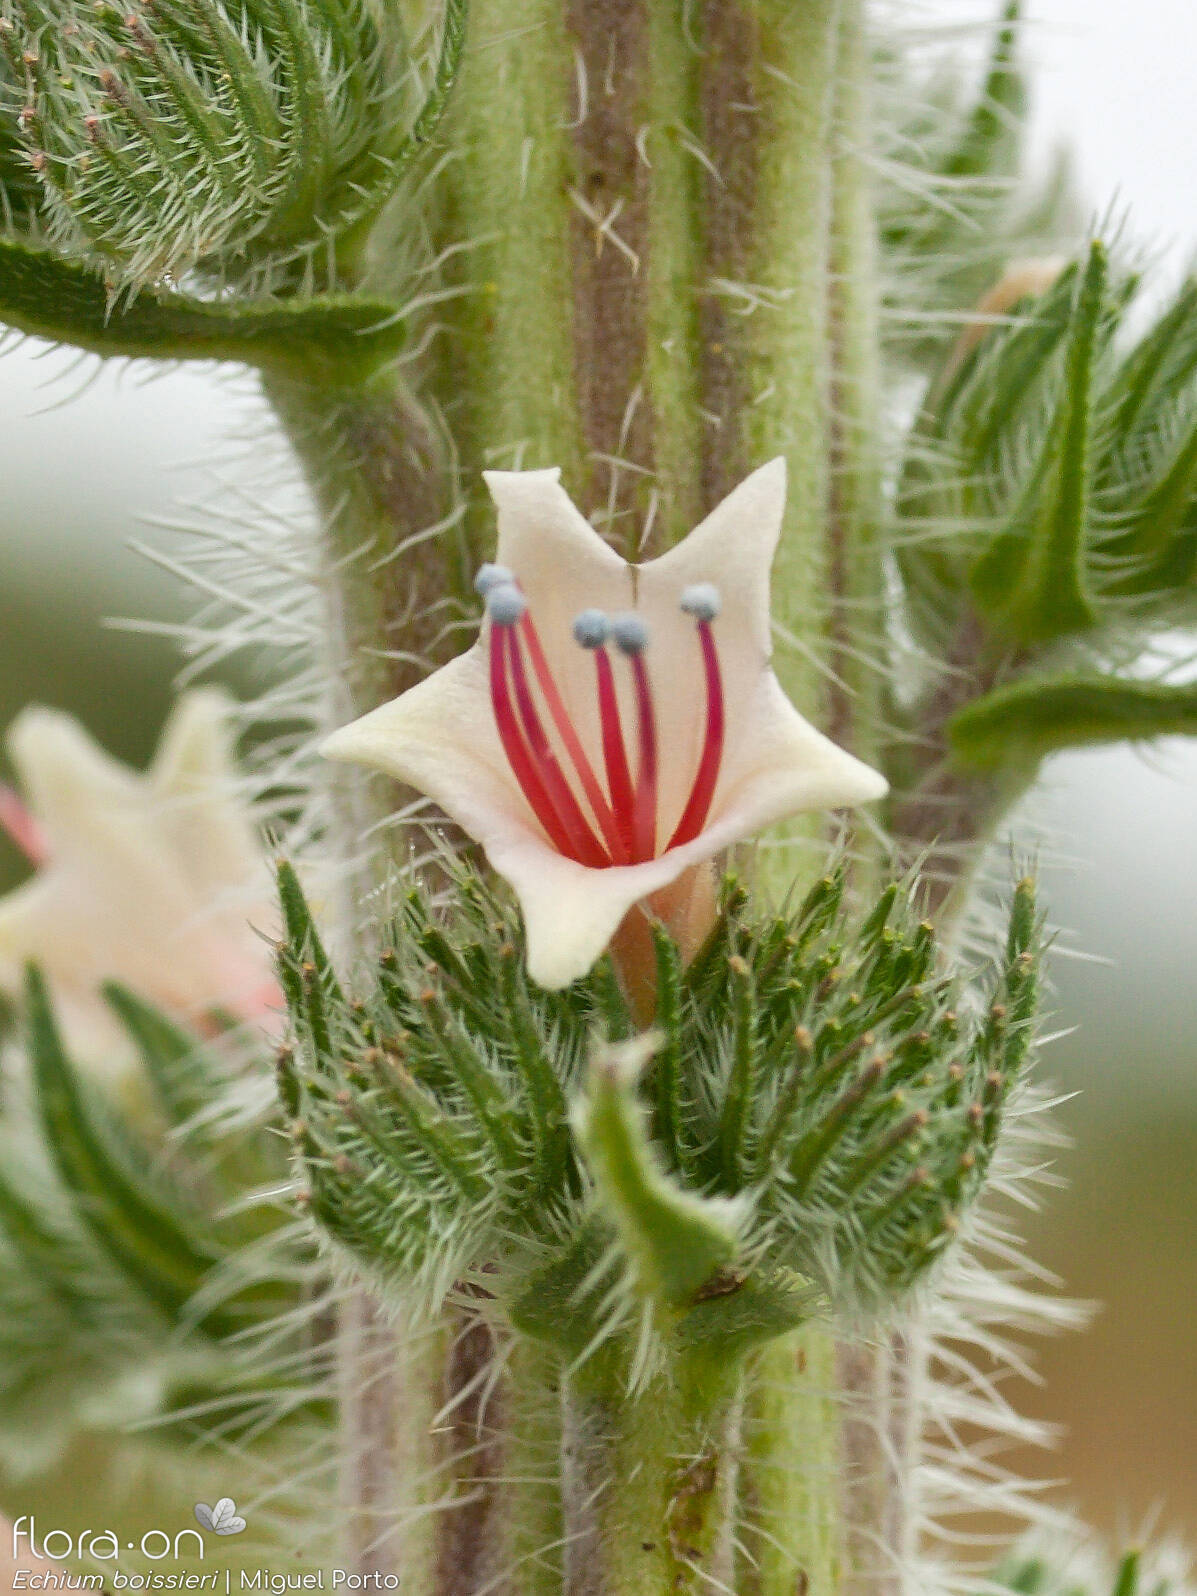 Echium boissieri - Flor (close-up) | Miguel Porto; CC BY-NC 4.0